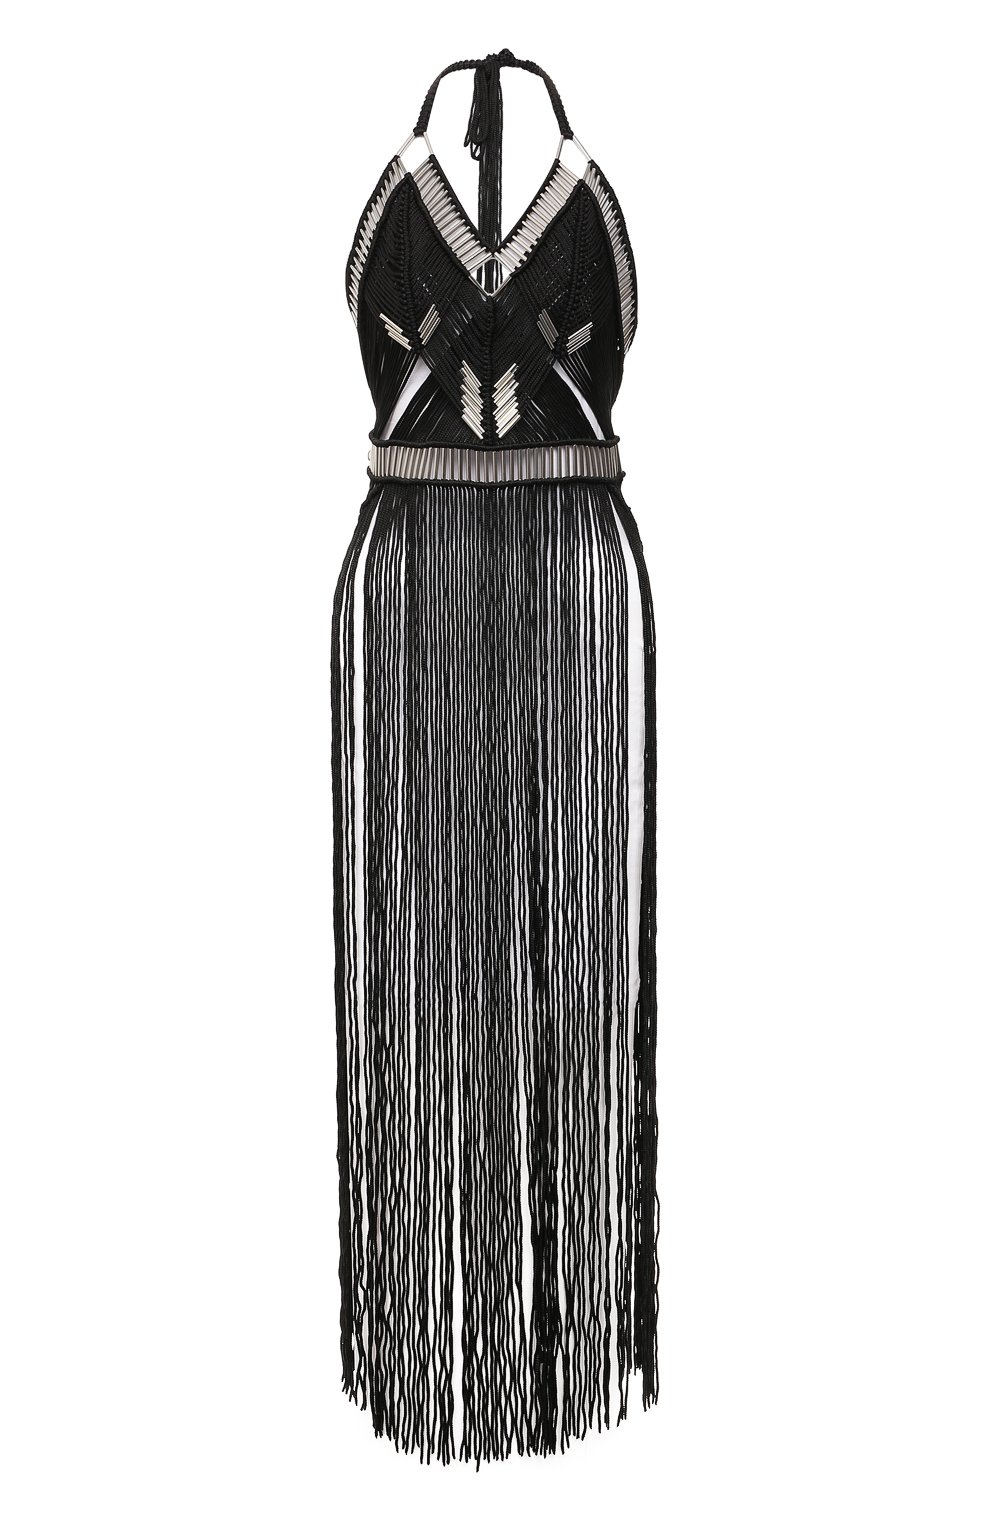 Модный Остров Платье с поясом Дарья Черное, размер 44 (226714_44)